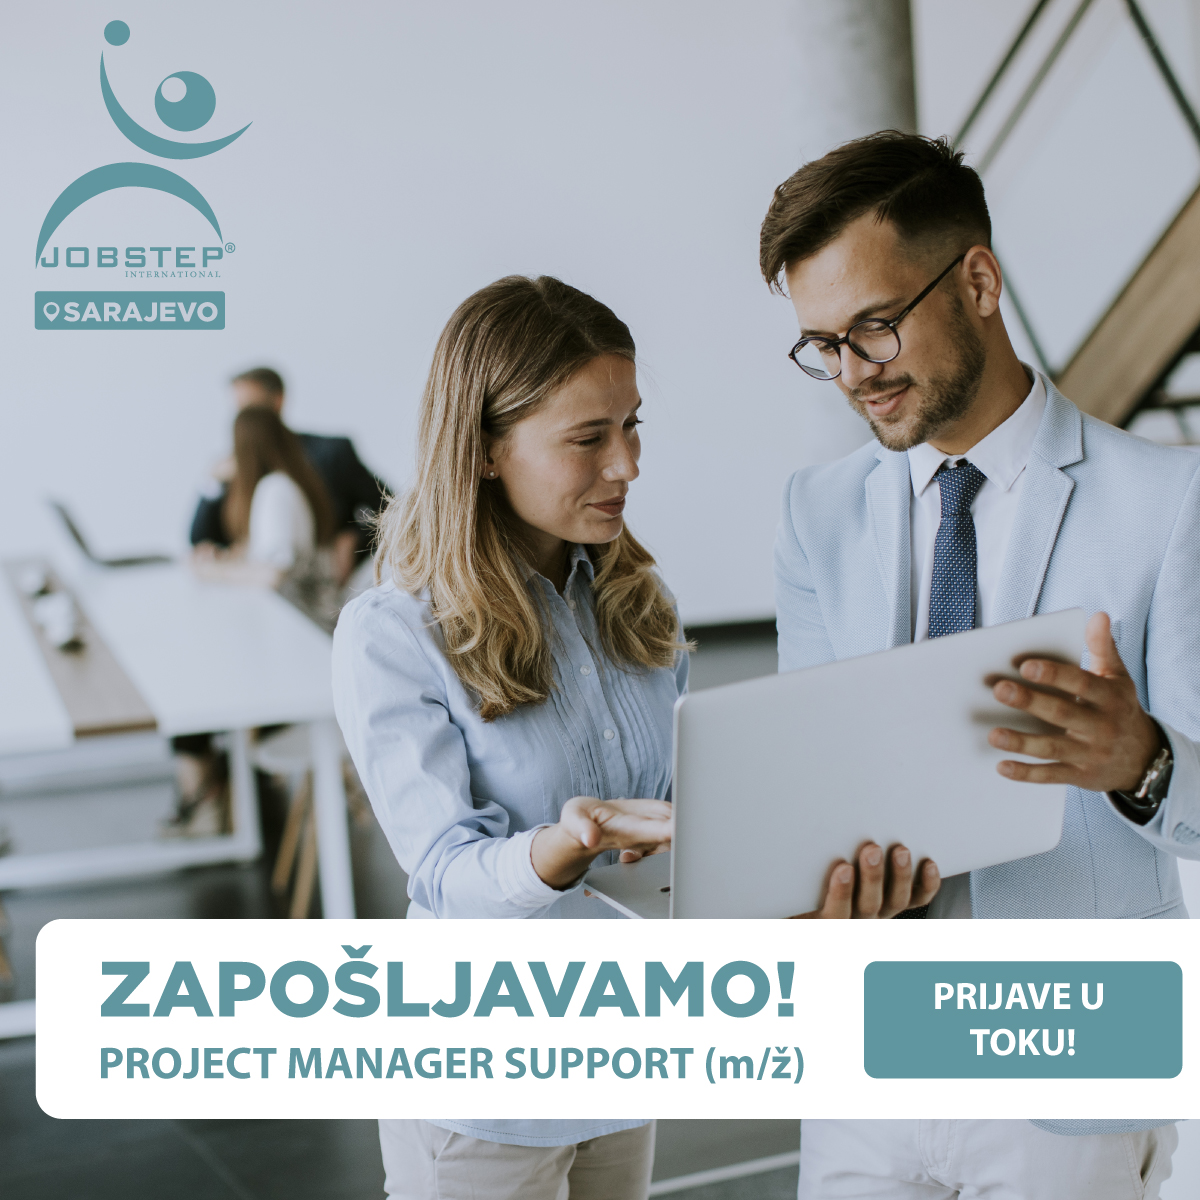 ZAPOŠLJAVAMO: Project Manager Support (m/ž) u Sarajevu!